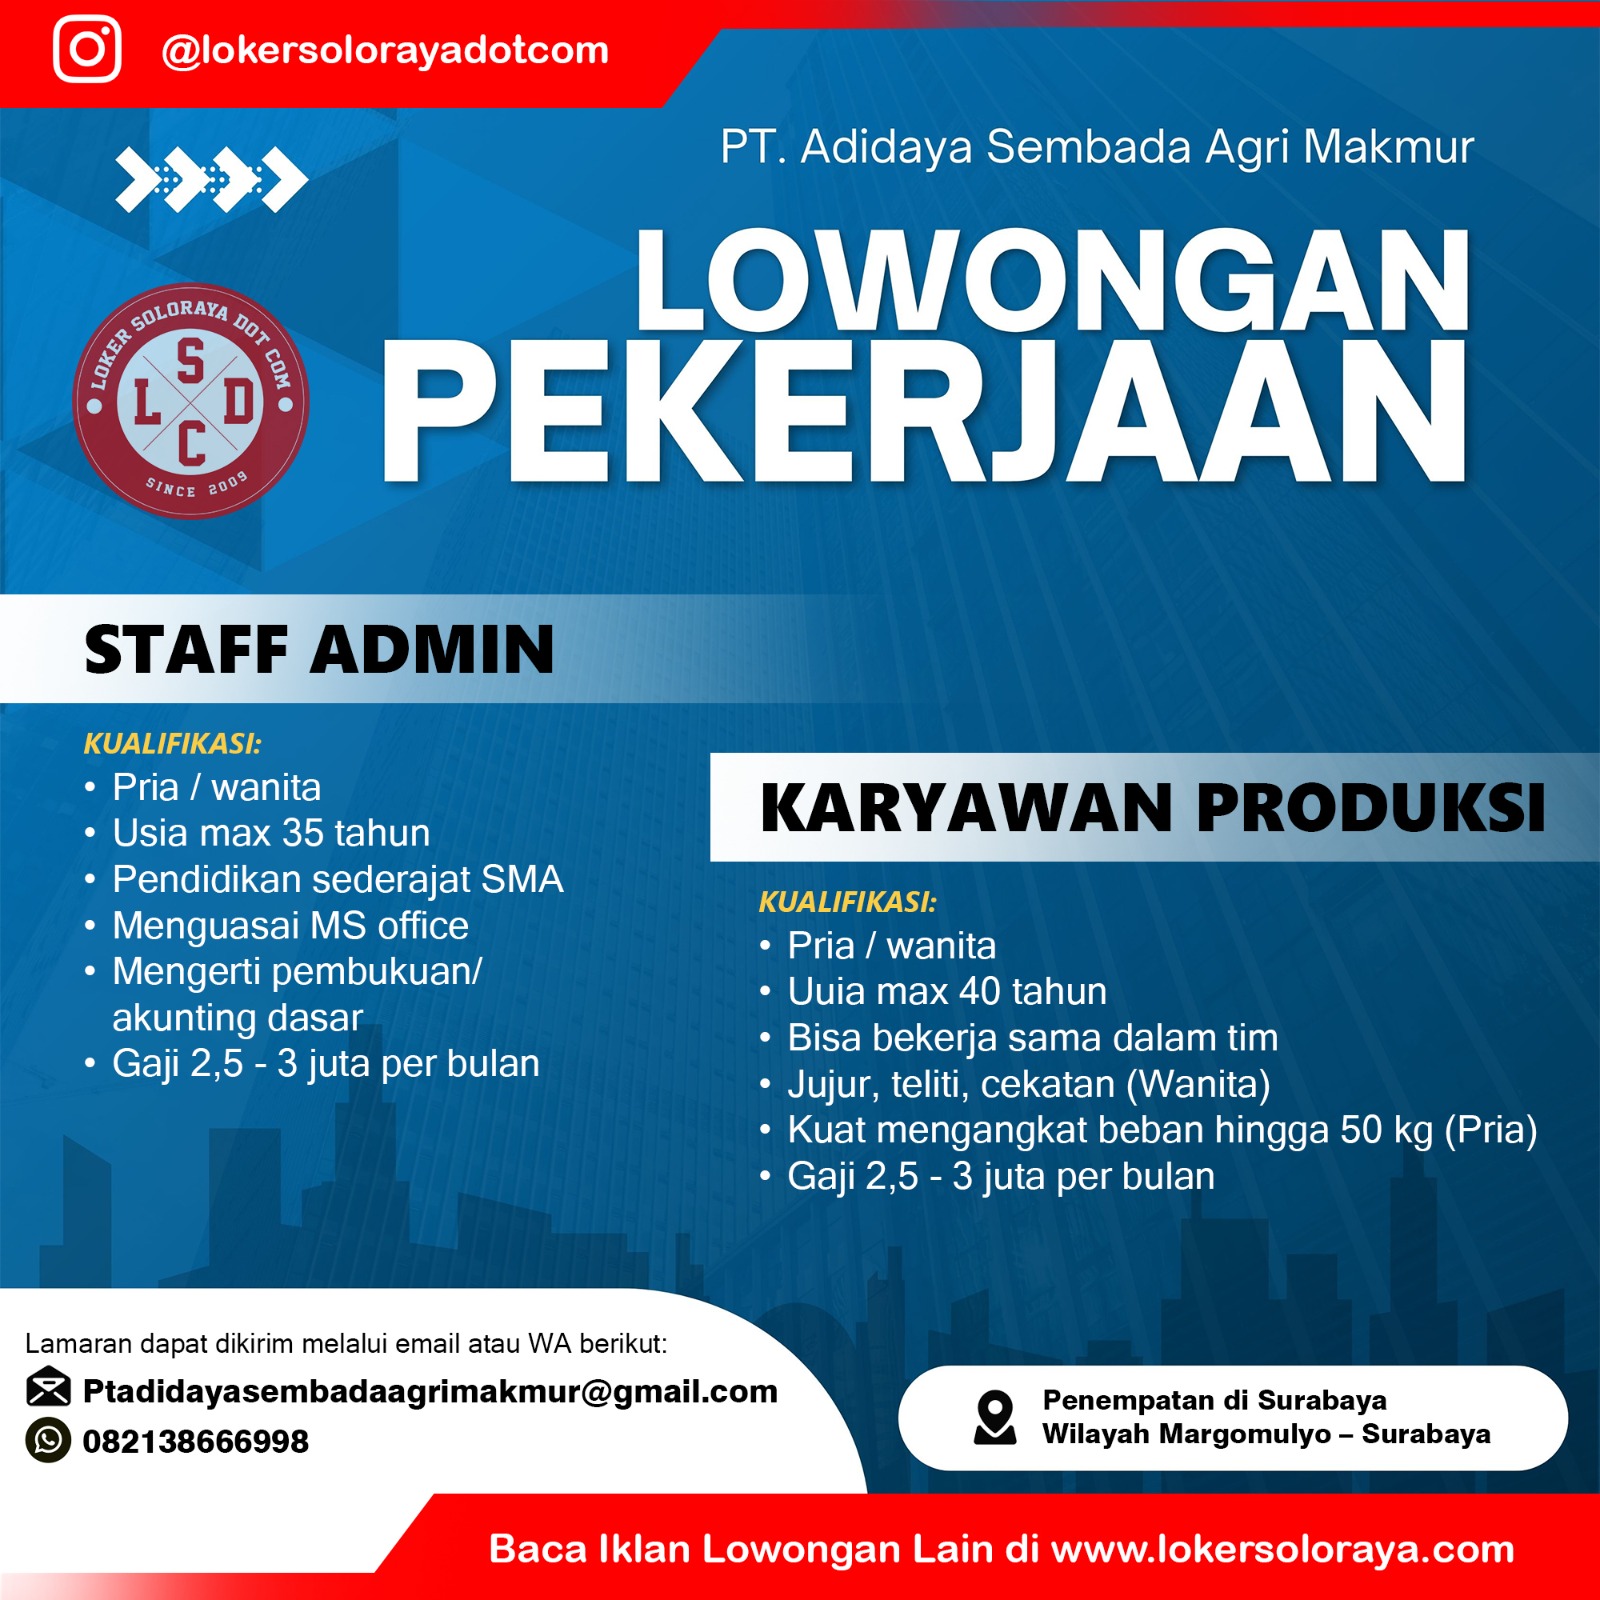 Loker Staff Admin, Karyawan Produksi Surabaya di PT Adidaya Sembada Agri Makmur